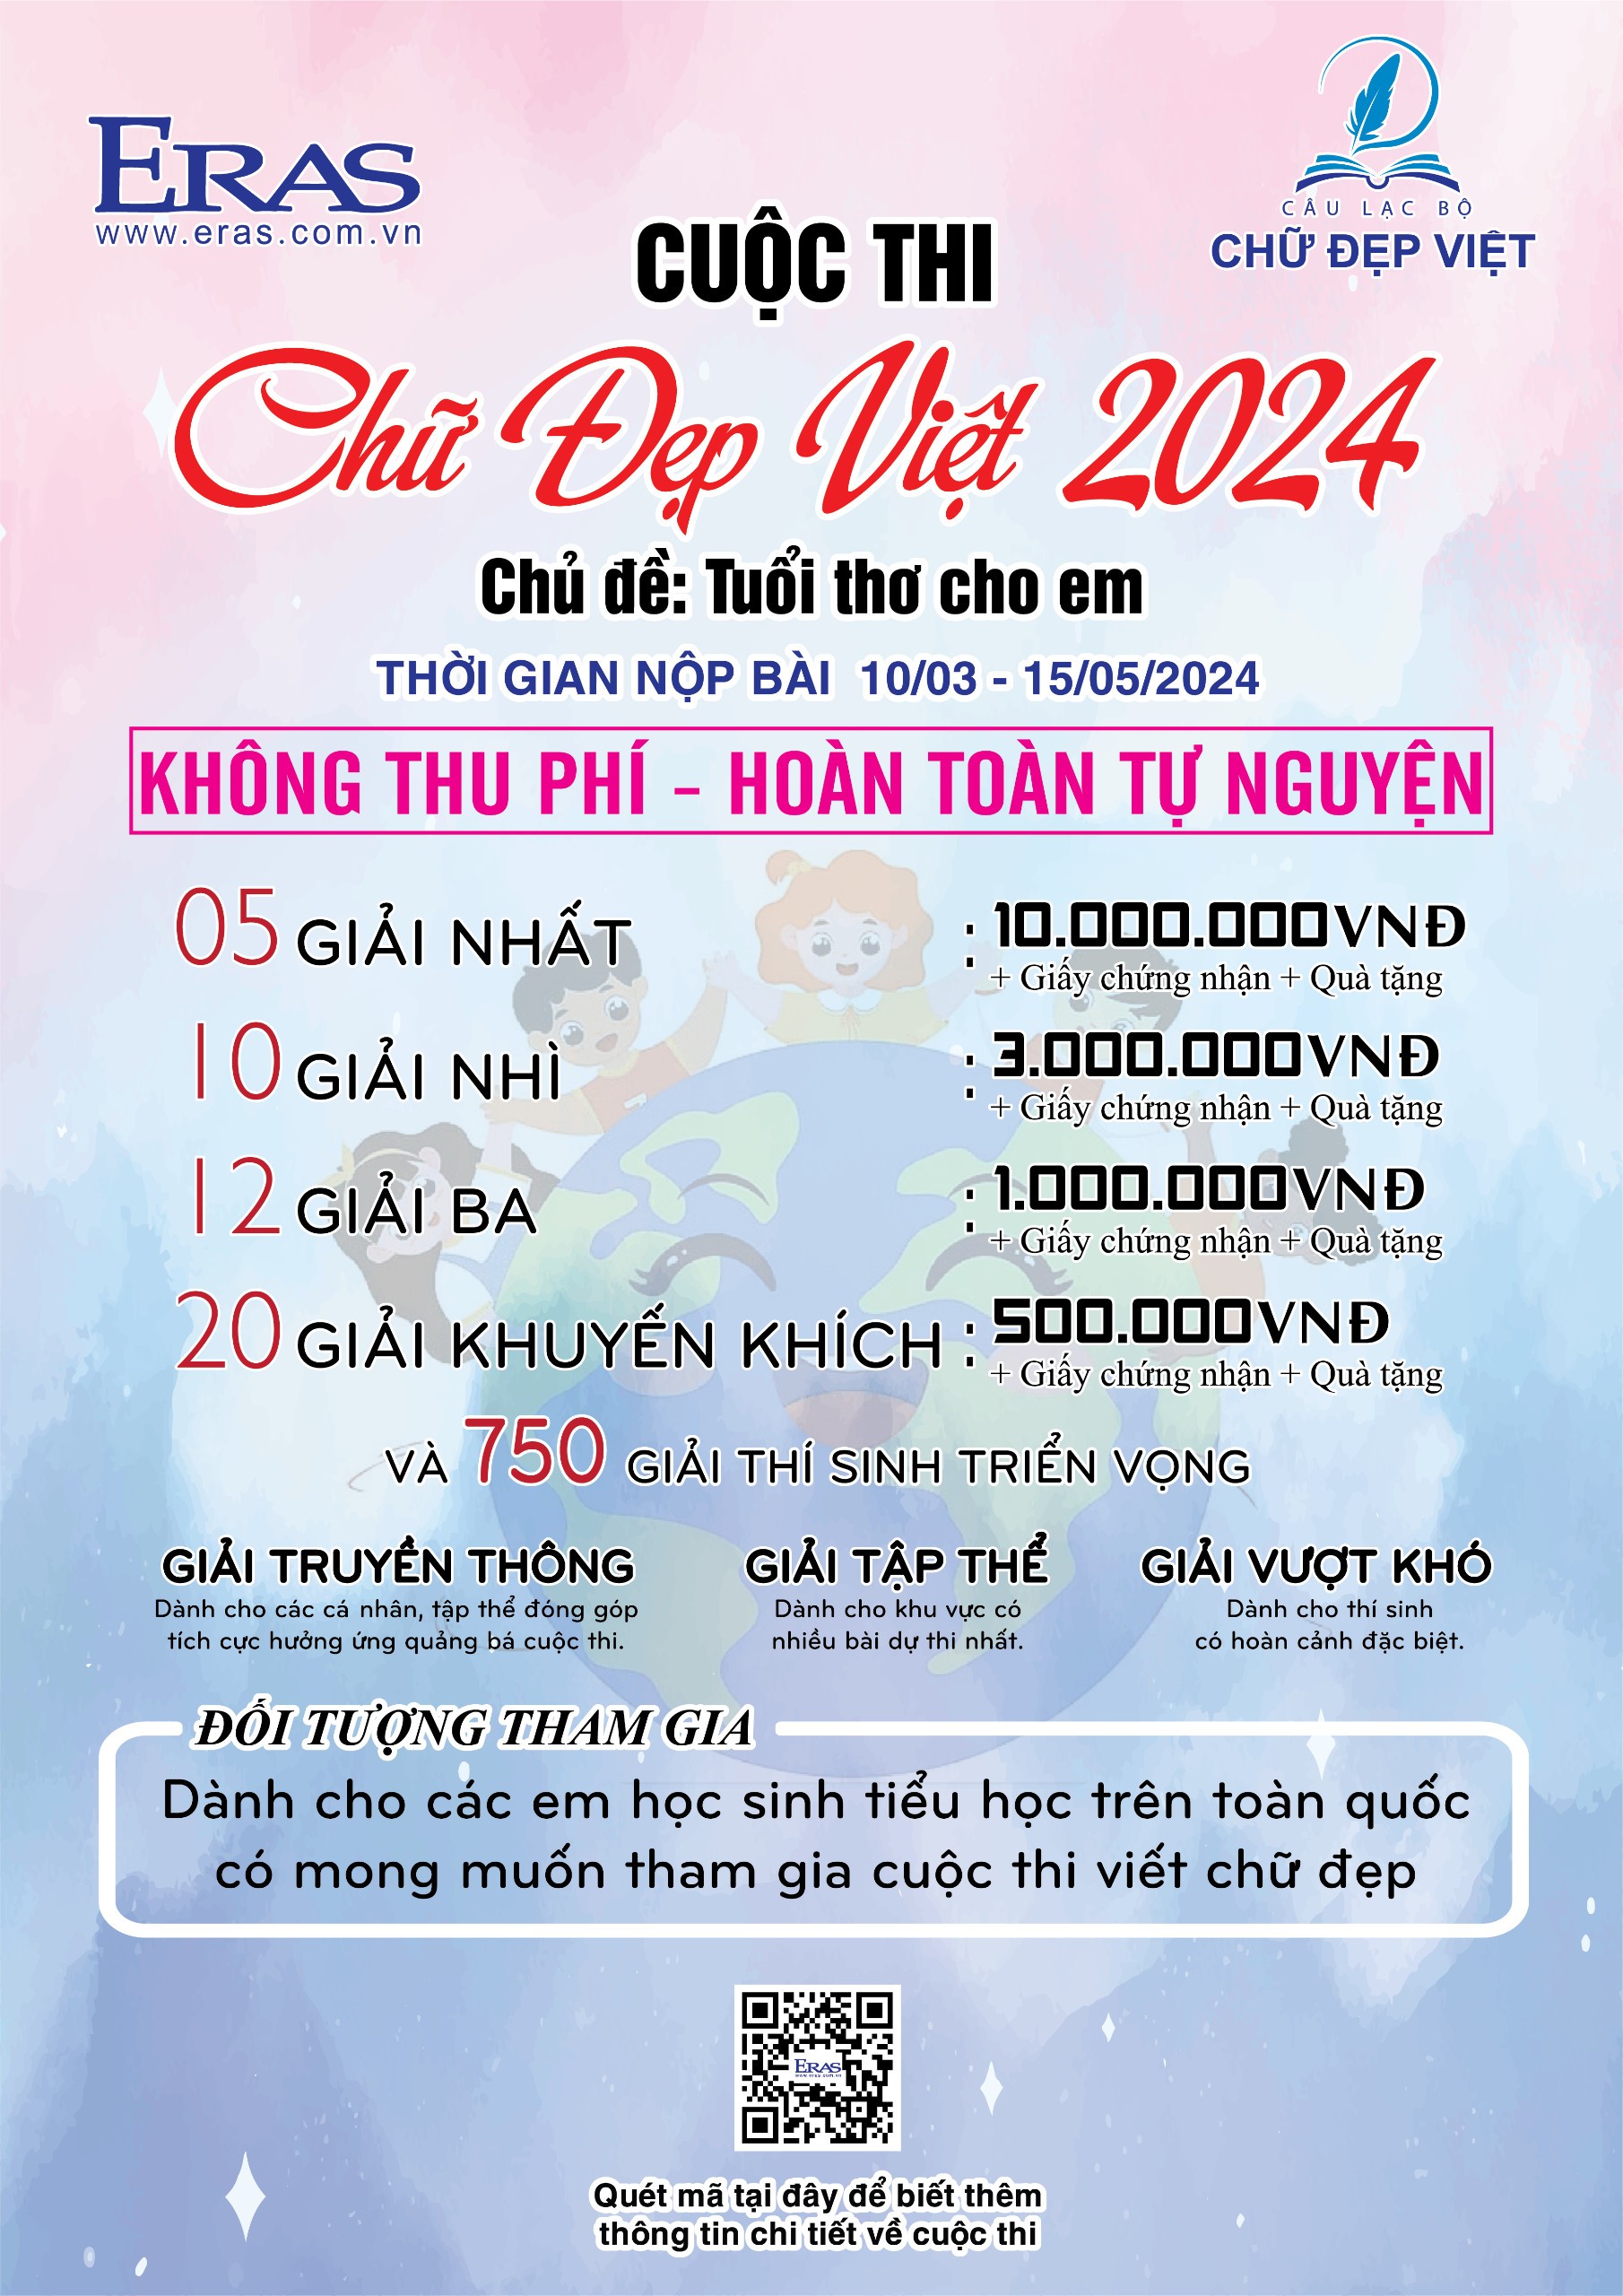 Câu lạc bộ Chữ Đẹp Việt phối hợp cùng Công ty TNHH Thanh Chương - VPP Eras phát động cuộc thi "Chữ Đẹp Việt" năm 2024